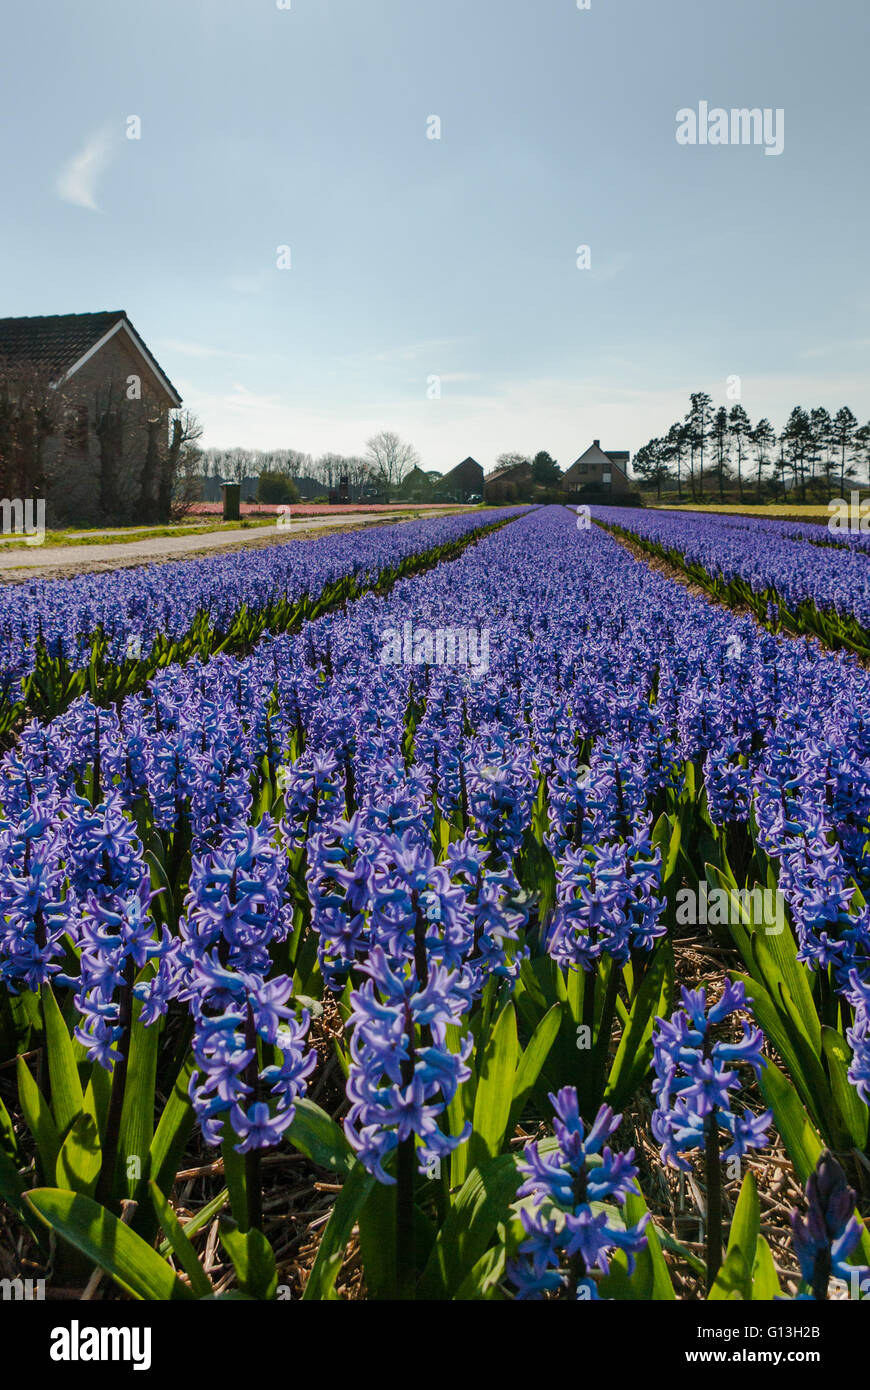 Lila blaue Hyazinthen blühen Feld in voller Blüte, mit führenden Fluchtlinien bis zum Horizont und Bauernhäuser - Porträt Stockfoto